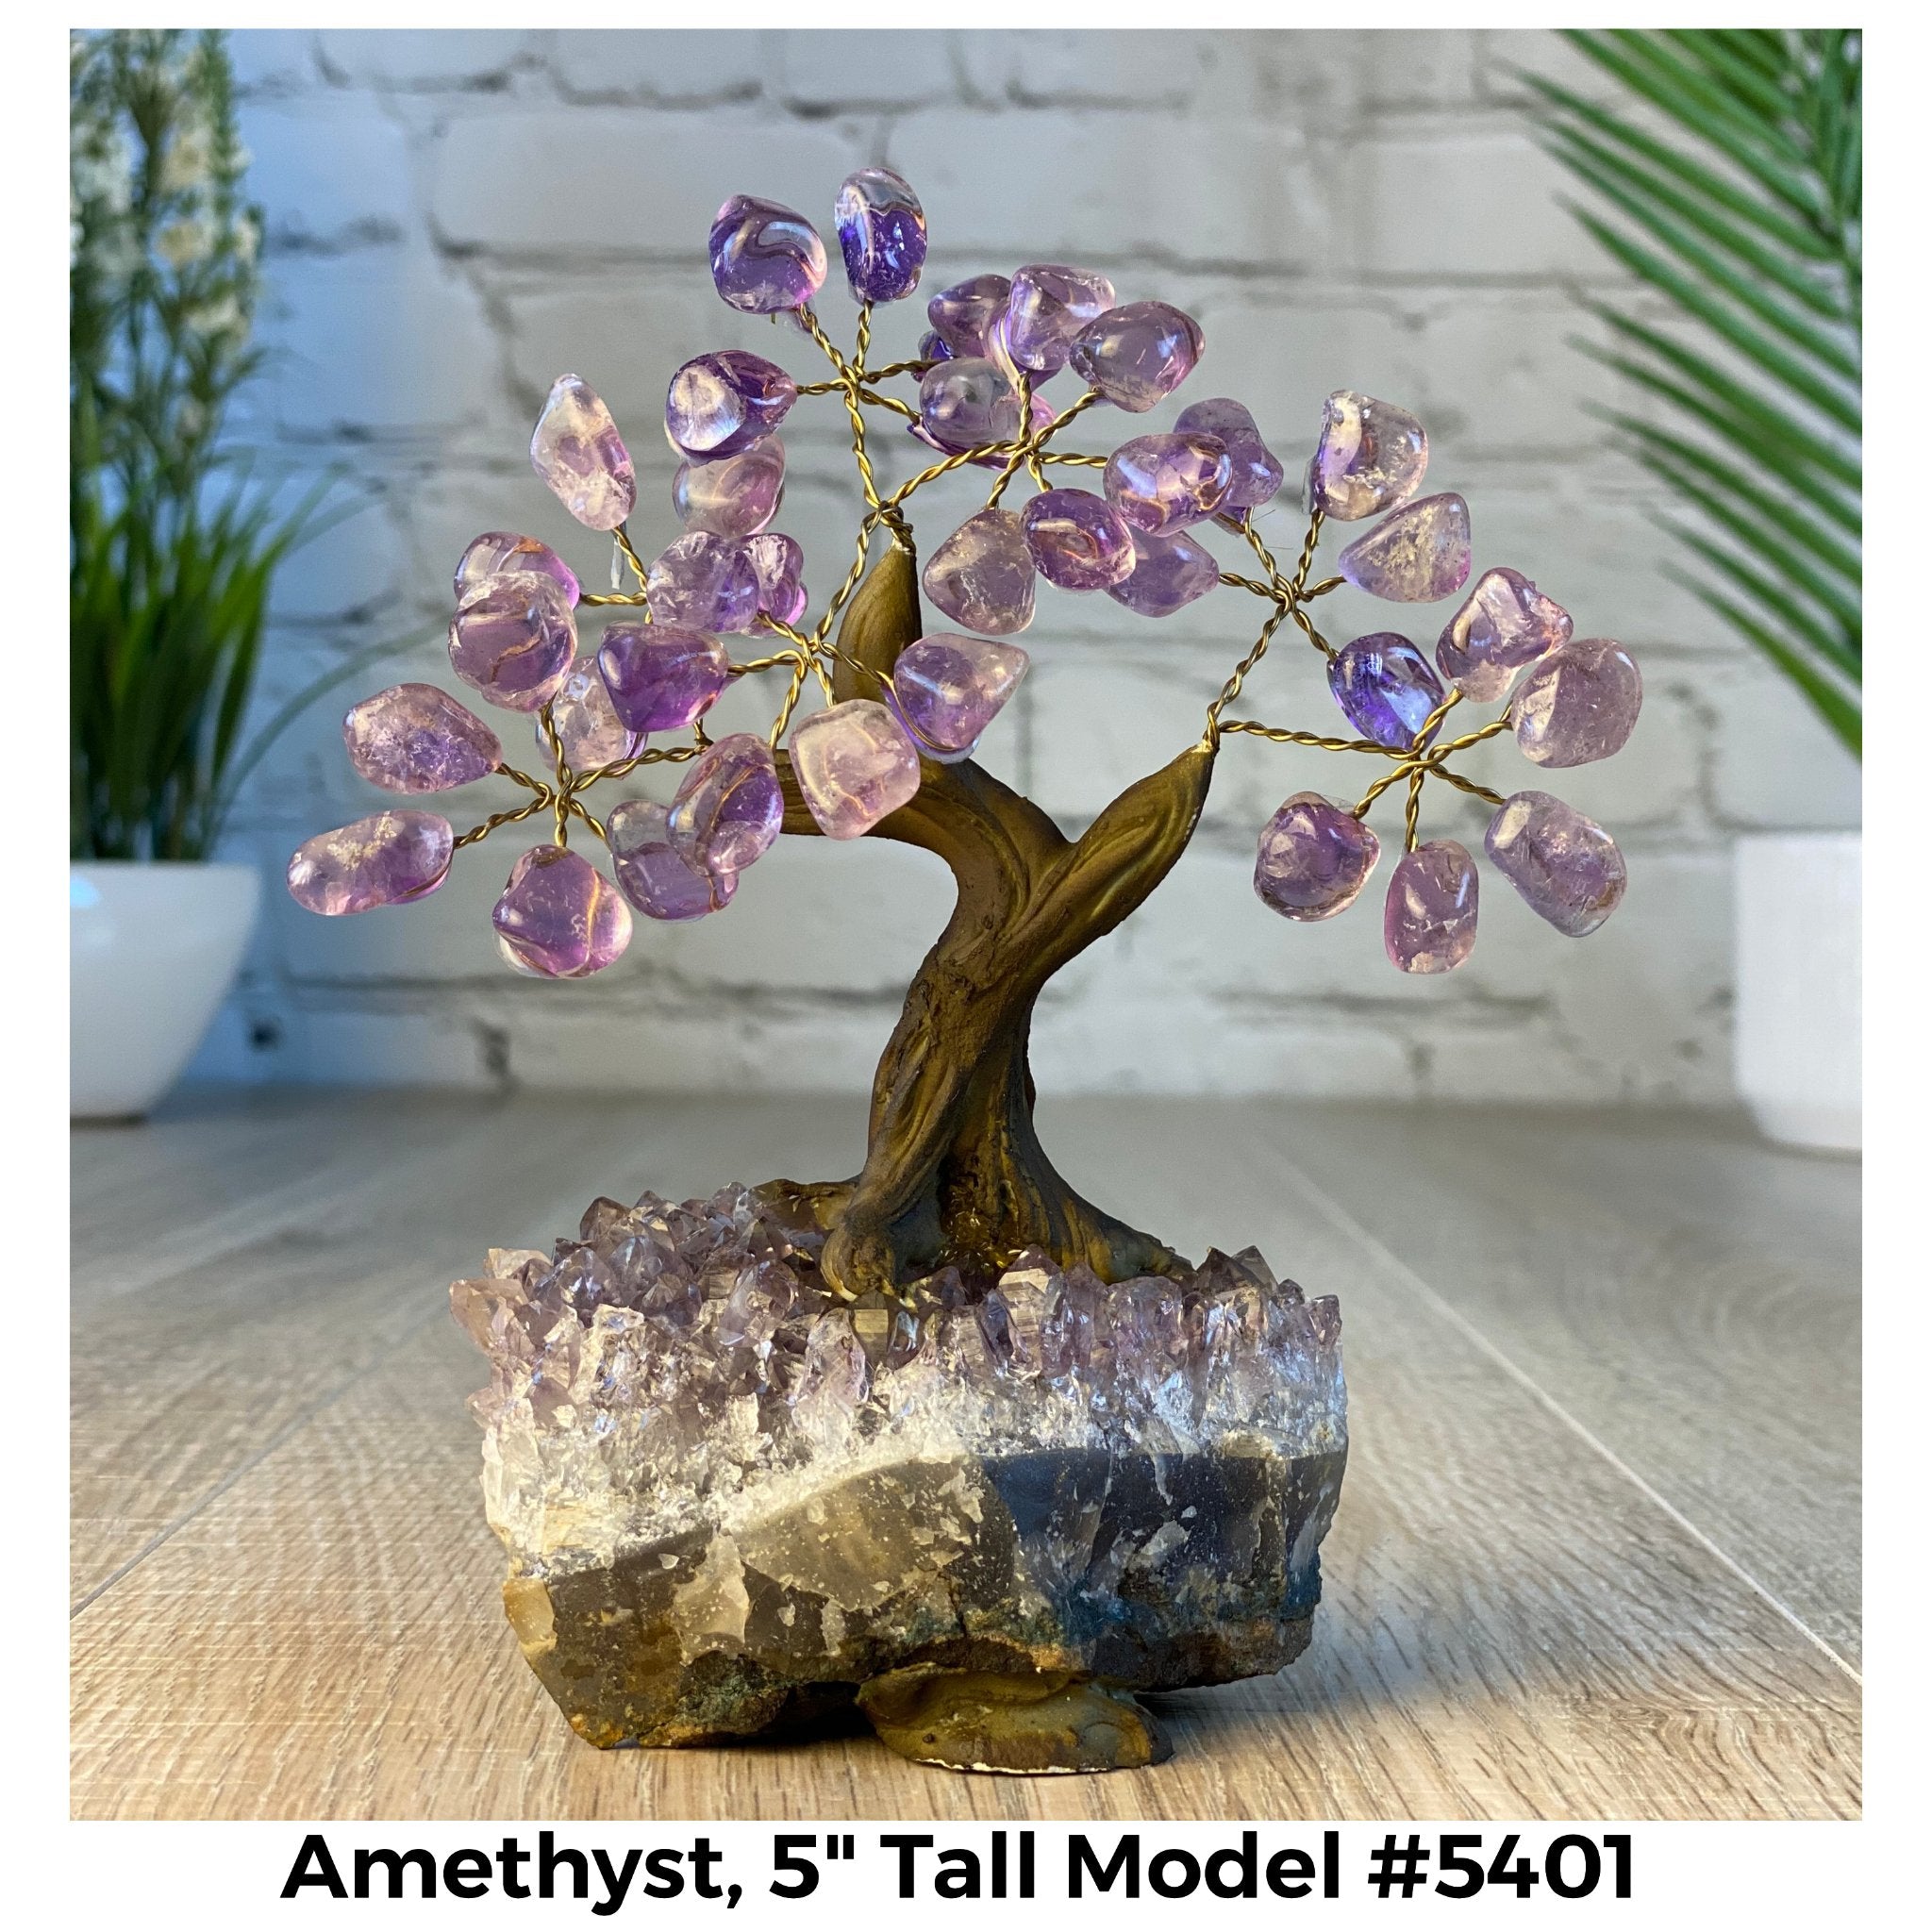 Amethyst 5" Tall Handmade Gemstone Tree on a Crystal base, 35 Gems #5401AMTH - Brazil GemsBrazil GemsAmethyst 5" Tall Handmade Gemstone Tree on a Crystal base, 35 Gems #5401AMTHGemstone Trees5401AMTH